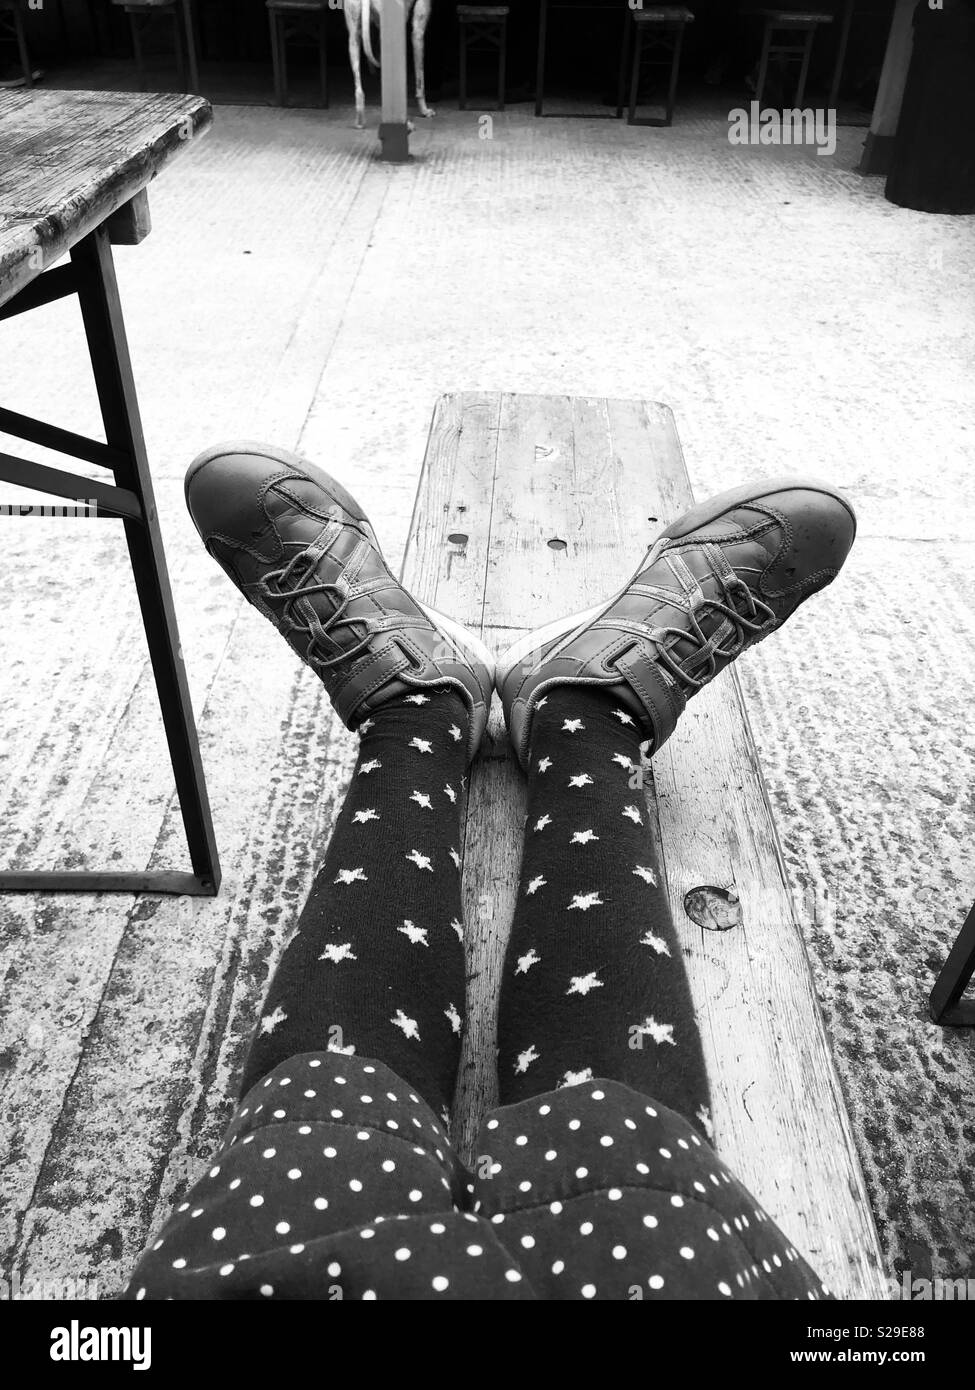 Ragazze gambe di appoggio su un banco indossando dei formatori e stella collant Foto Stock